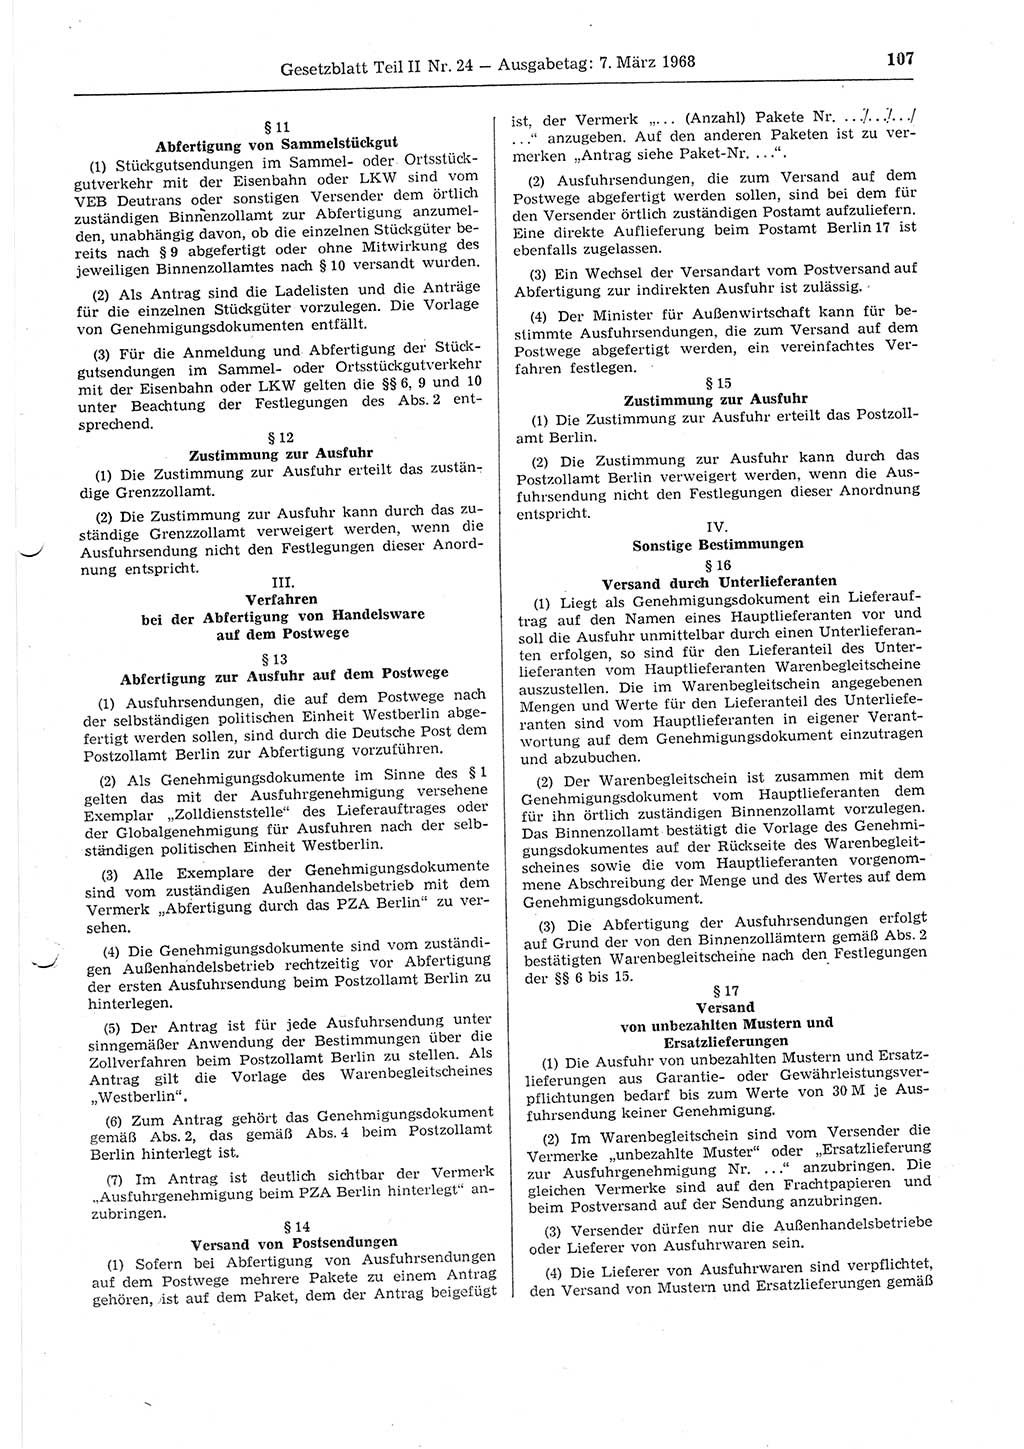 Gesetzblatt (GBl.) der Deutschen Demokratischen Republik (DDR) Teil ⅠⅠ 1968, Seite 107 (GBl. DDR ⅠⅠ 1968, S. 107)